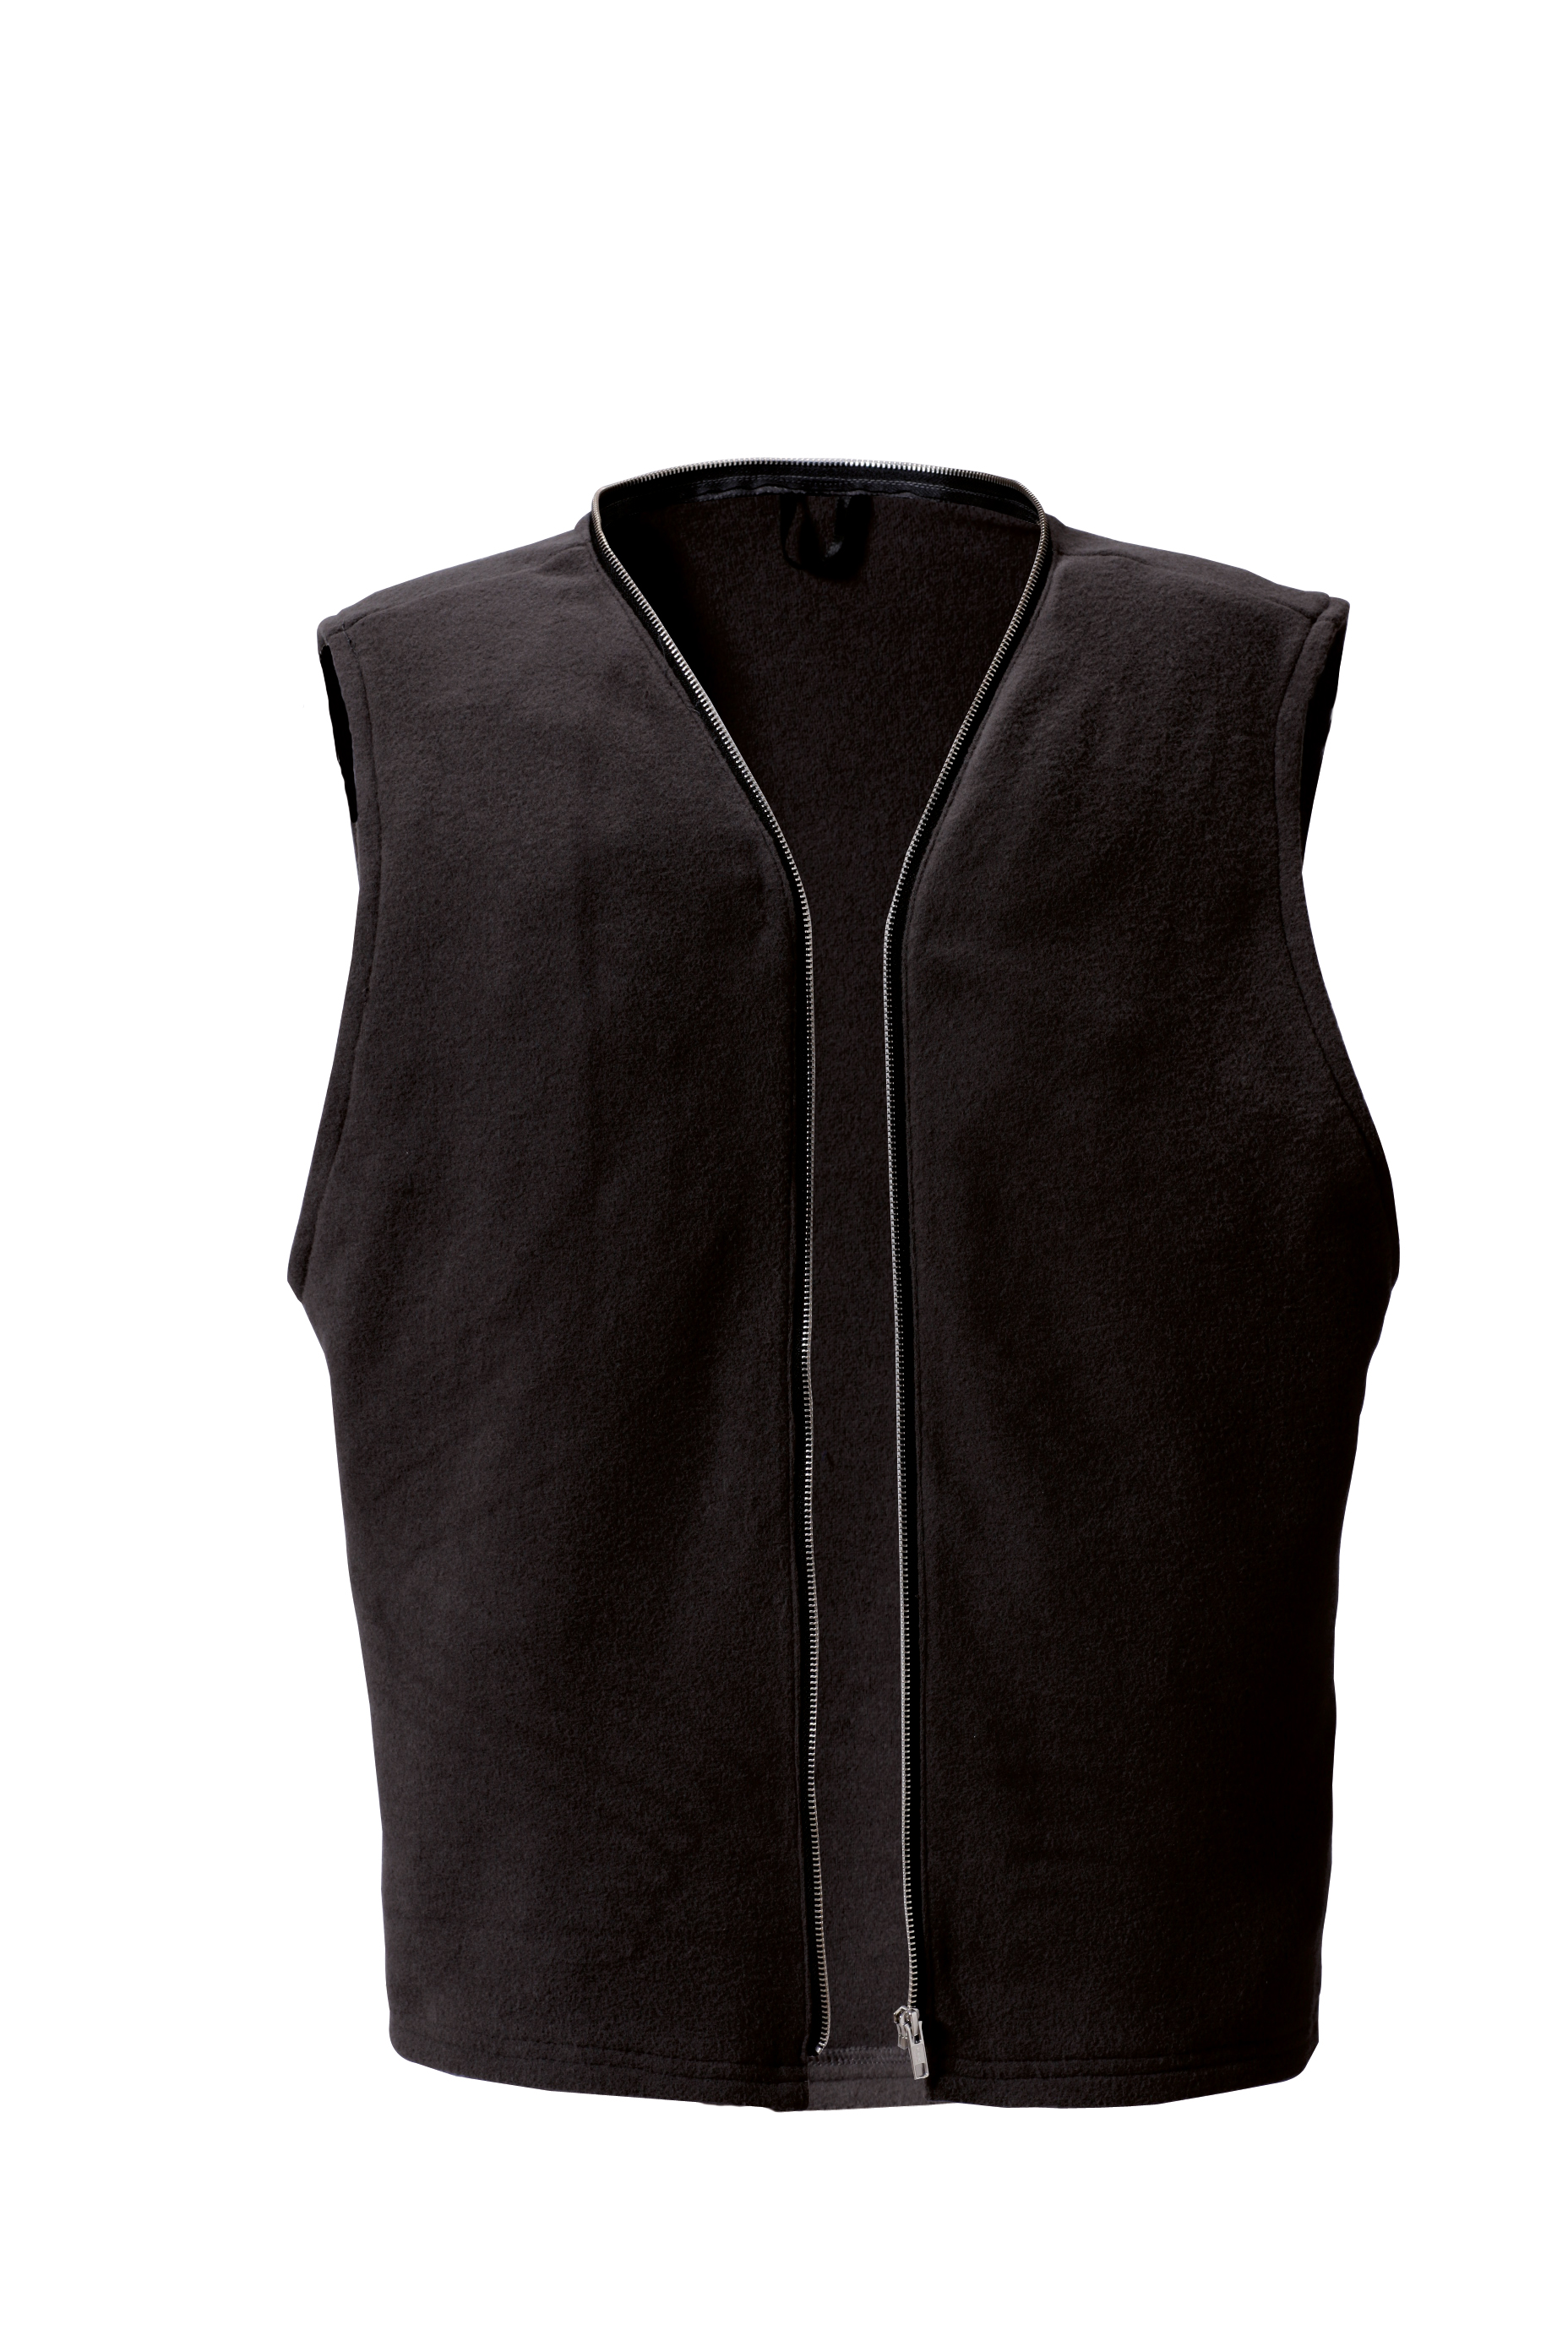 ROFA-Workwear, Winterfutter, ohne Arm, ca. 420 g/m², schwarz